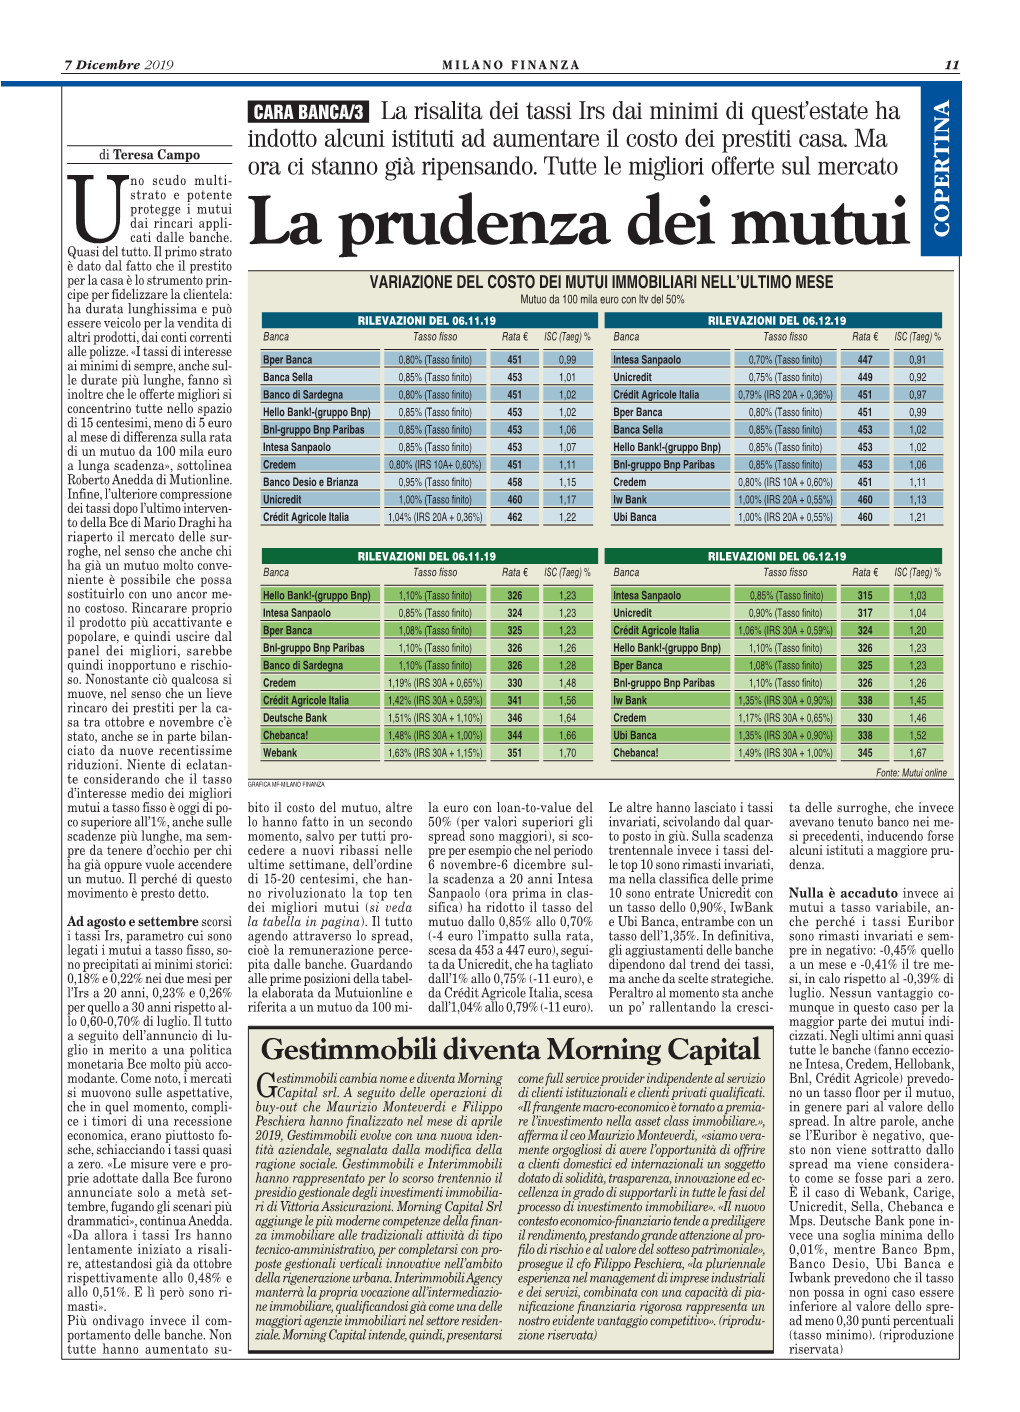 Milano Finanza – Gestimmobili Diventa Morning Capital